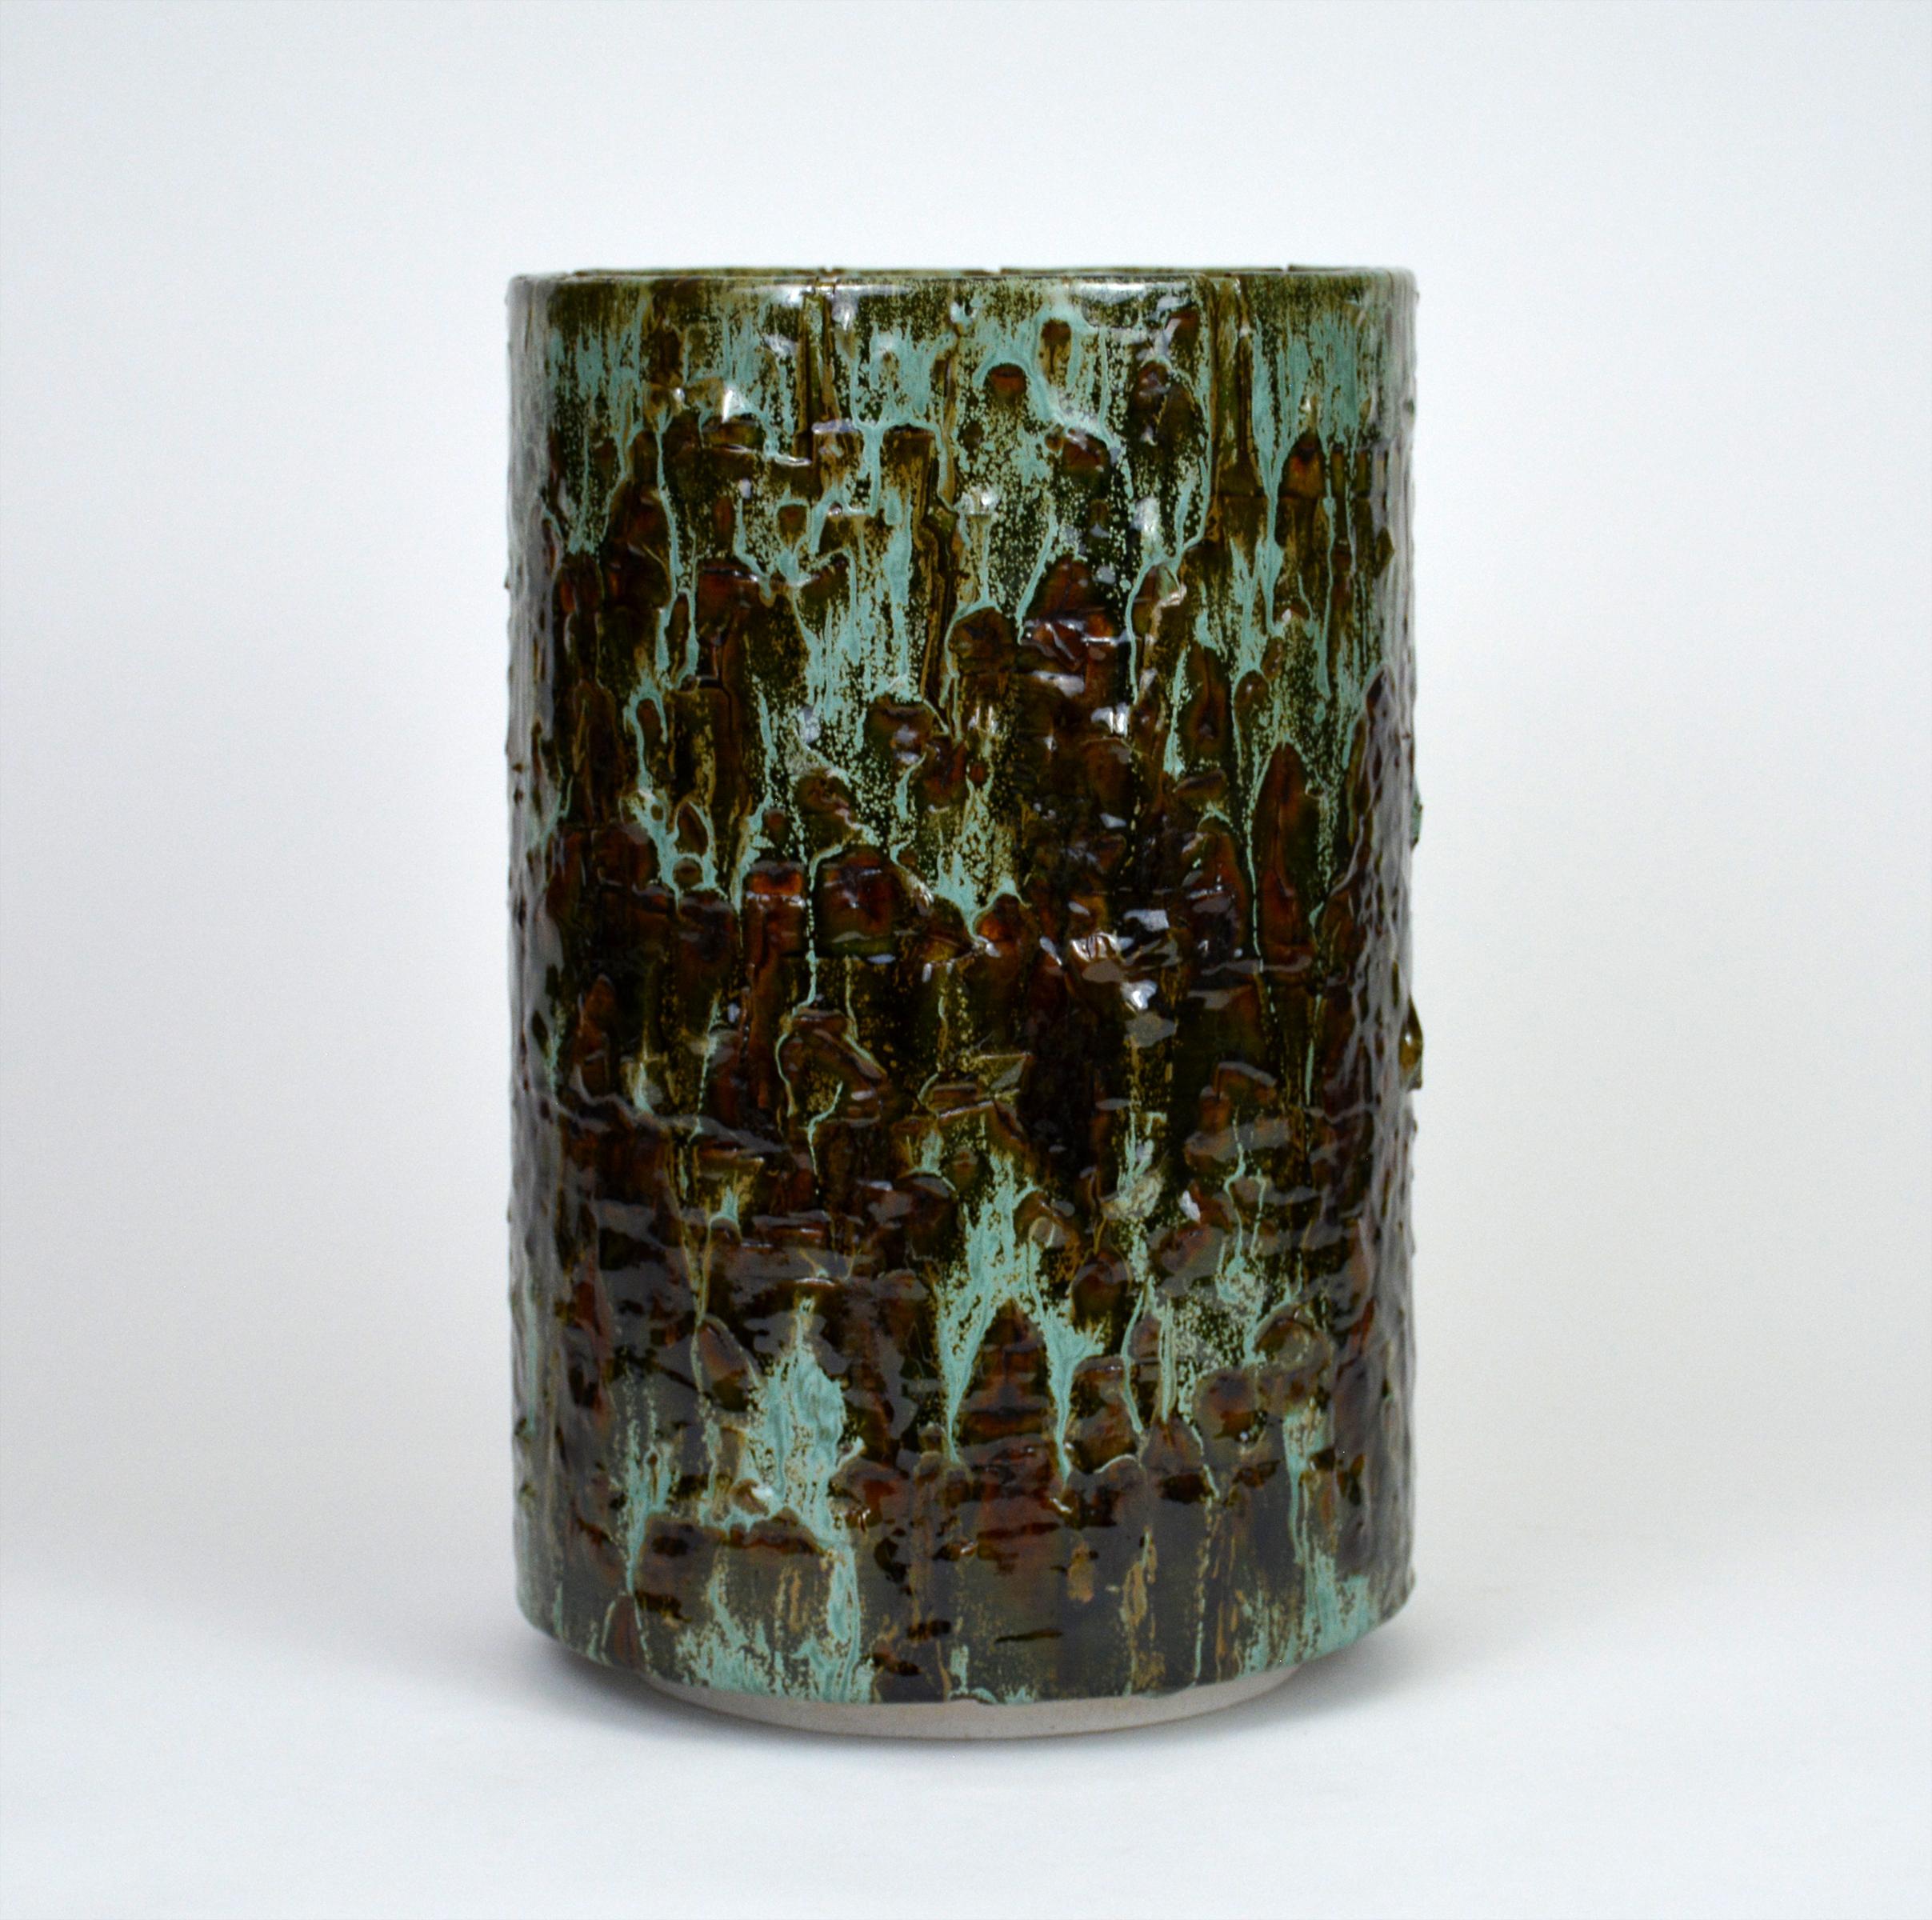 Zylindrische glasierte Keramikskulptur von William Edwards
Handgefertigtes, dekoratives Steingutgefäß, mehrfach gebrannt, um eine strukturierte Oberfläche von zufälliger Abstraktion zu erhalten, in Grüntönen, die über eine dunkle bernsteinfarbene